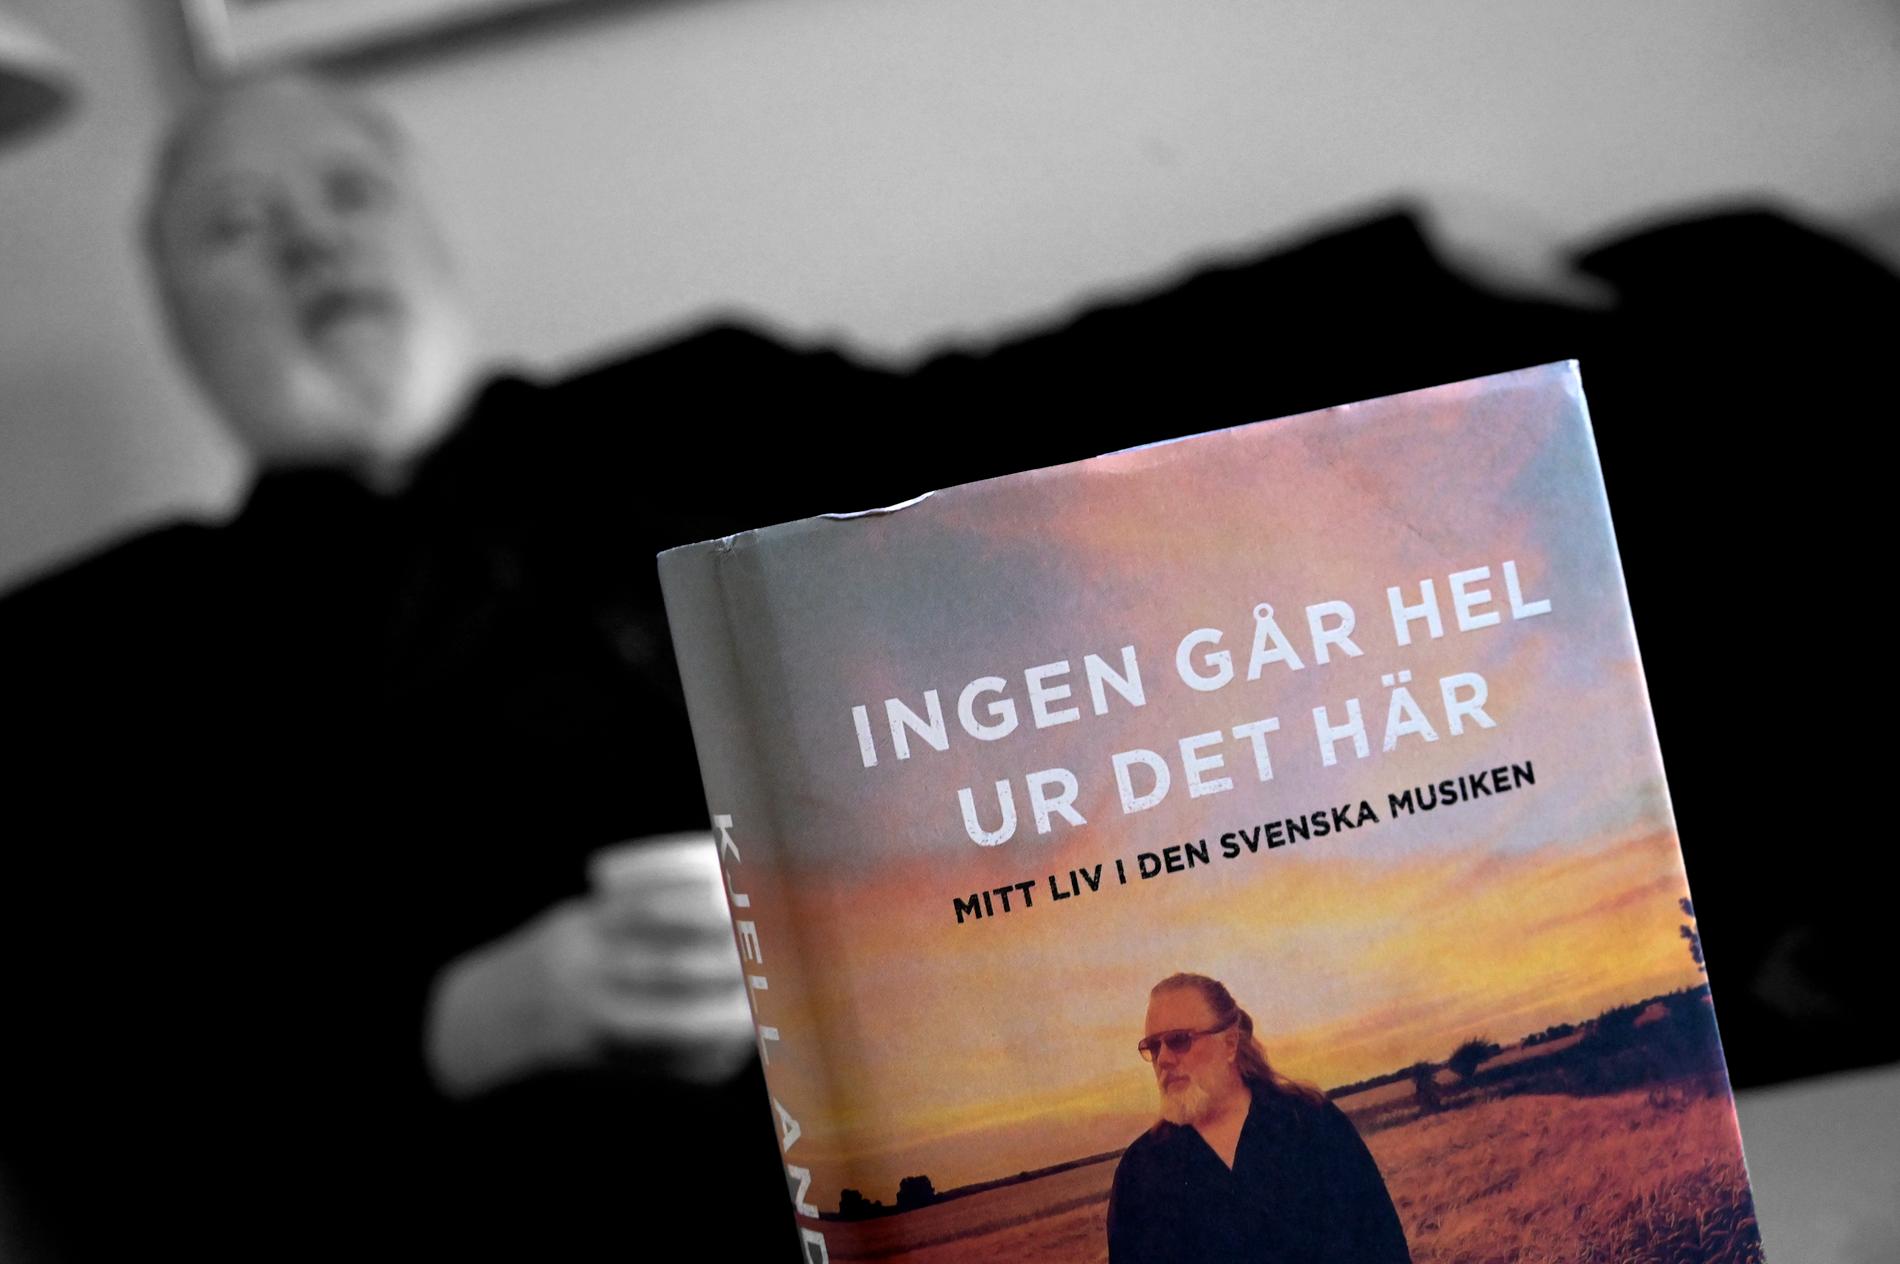 Musikproducenten Kjell Andersson gav nyligen ut en bok om sin karriär; ”Ingen går hel ur det här". Arkivbild.